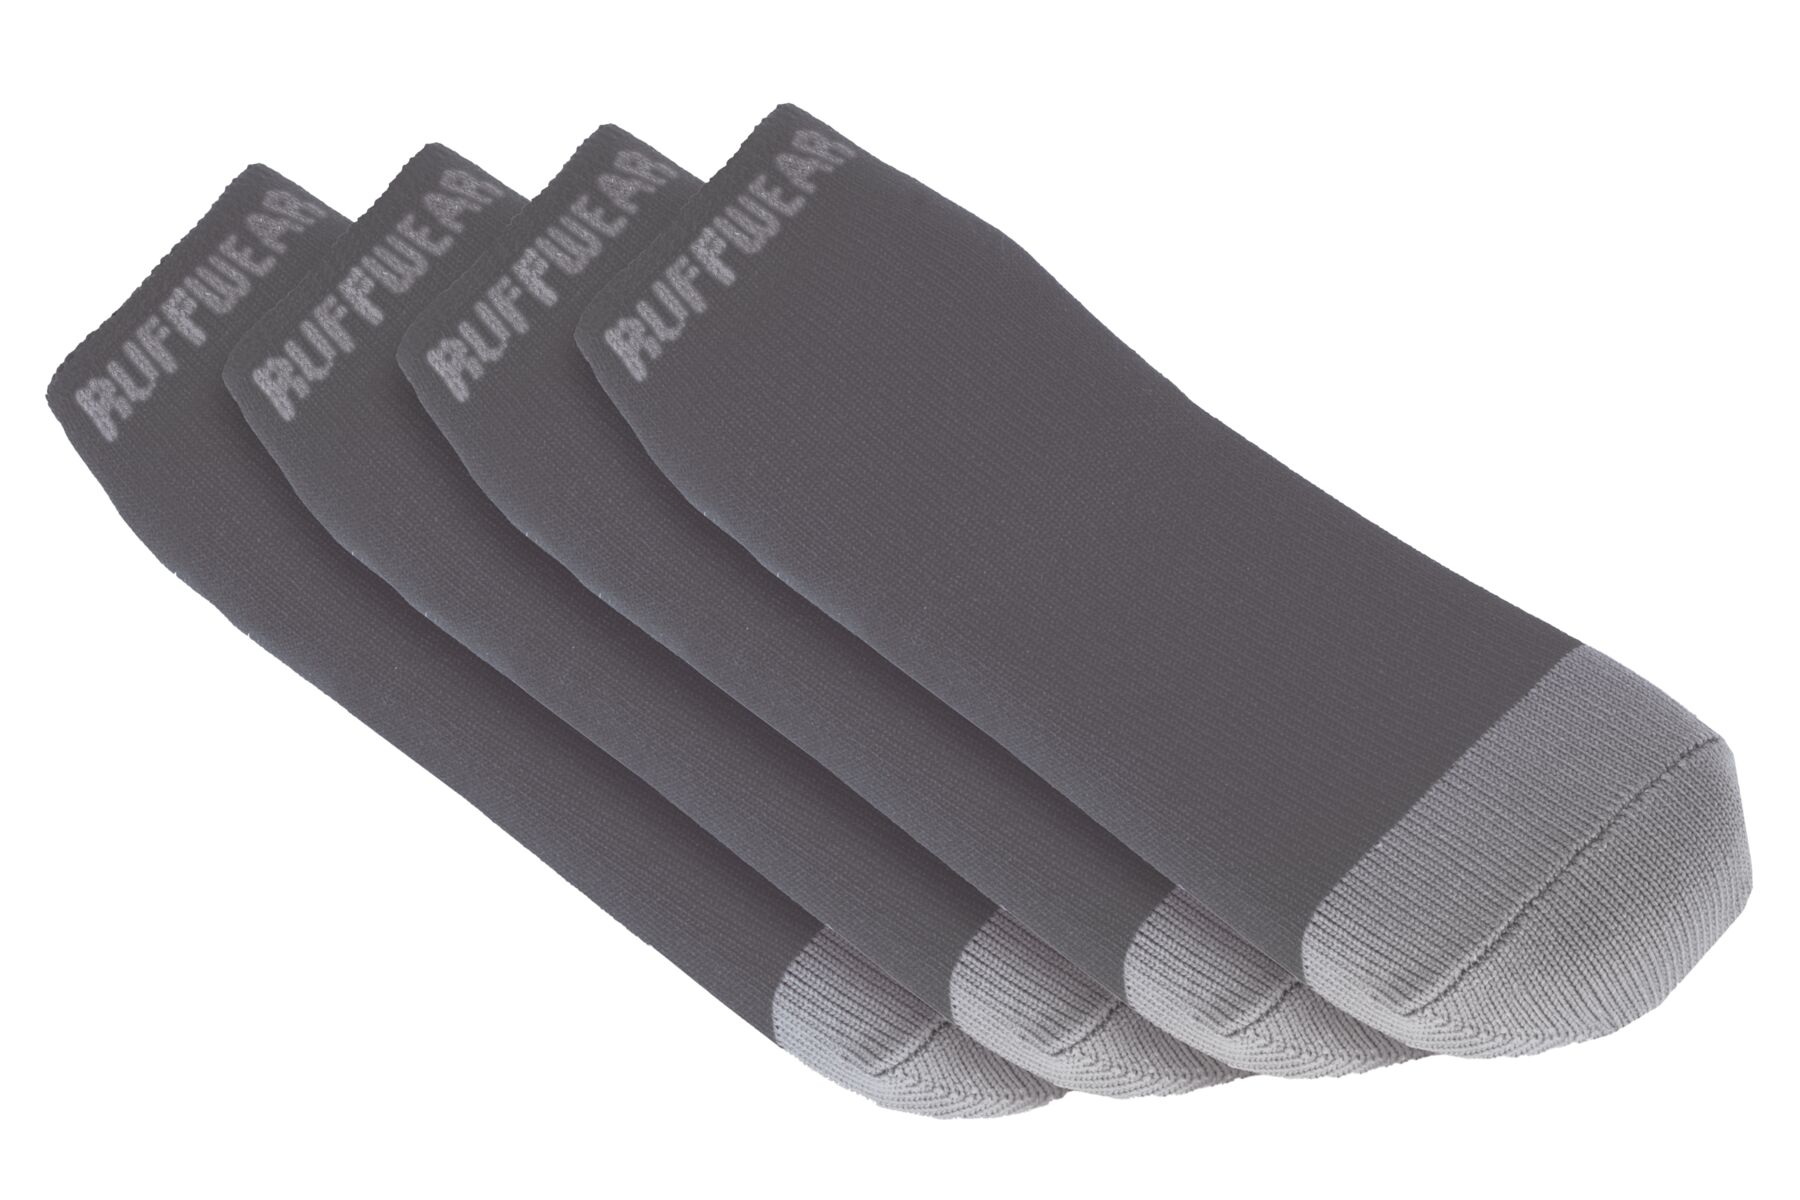 Chausettes pour chien bark'n boot™ comfortable et séchage rapide, lot de quatre. Couleur: twilight gray (gris), taille: s (51-57mm)